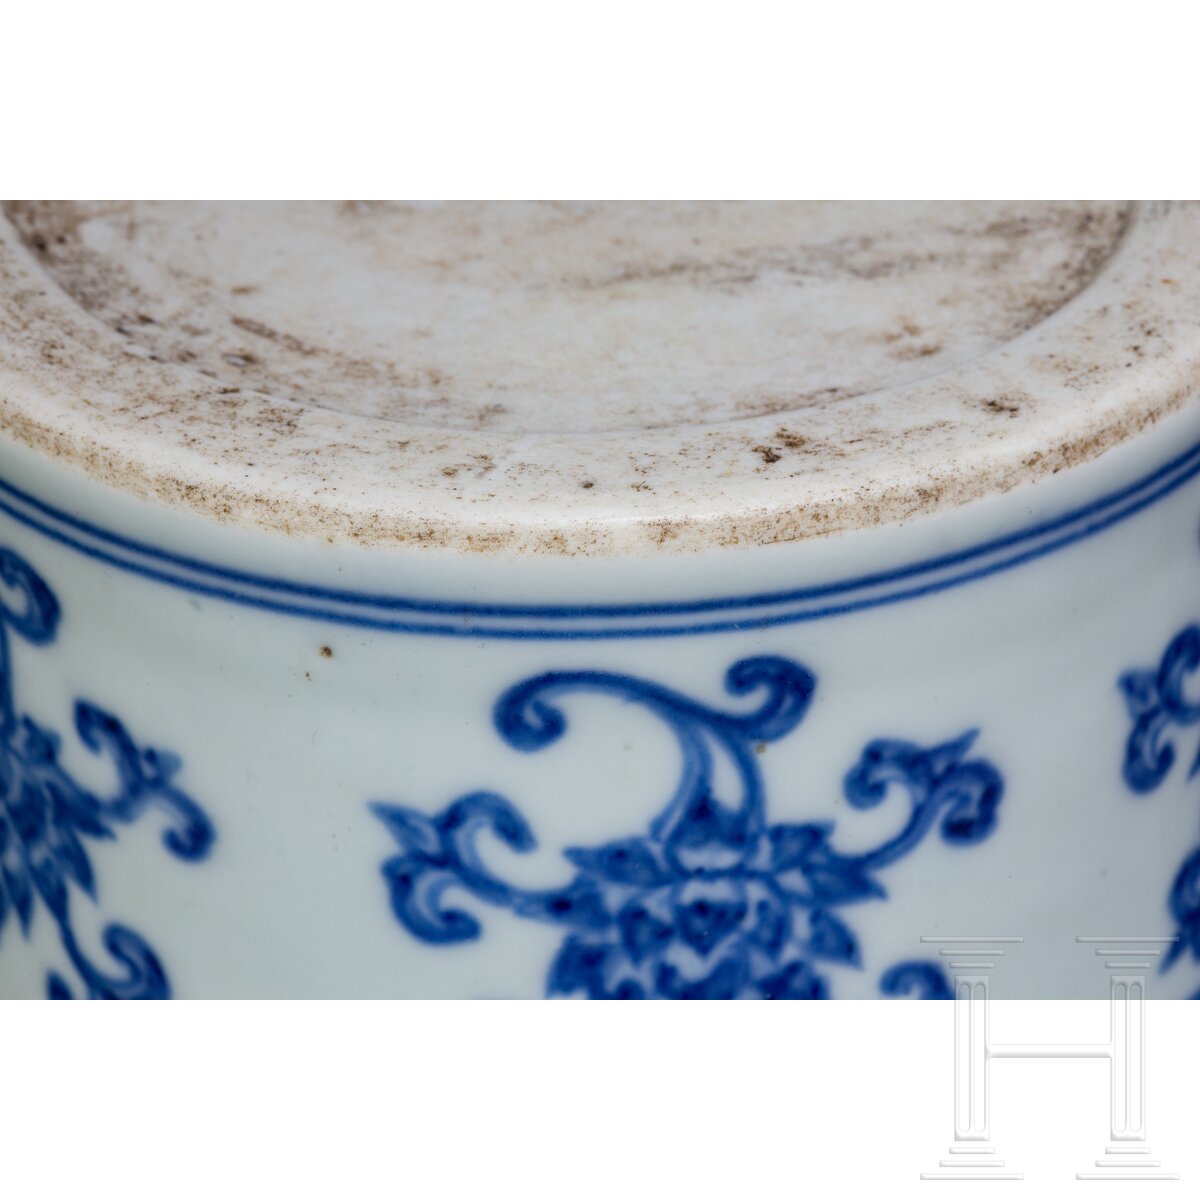 Blau-weiße Meiping-Vase im Ming-Stil, China, wahrscheinlich 19./20. Jhdt. - Image 7 of 16